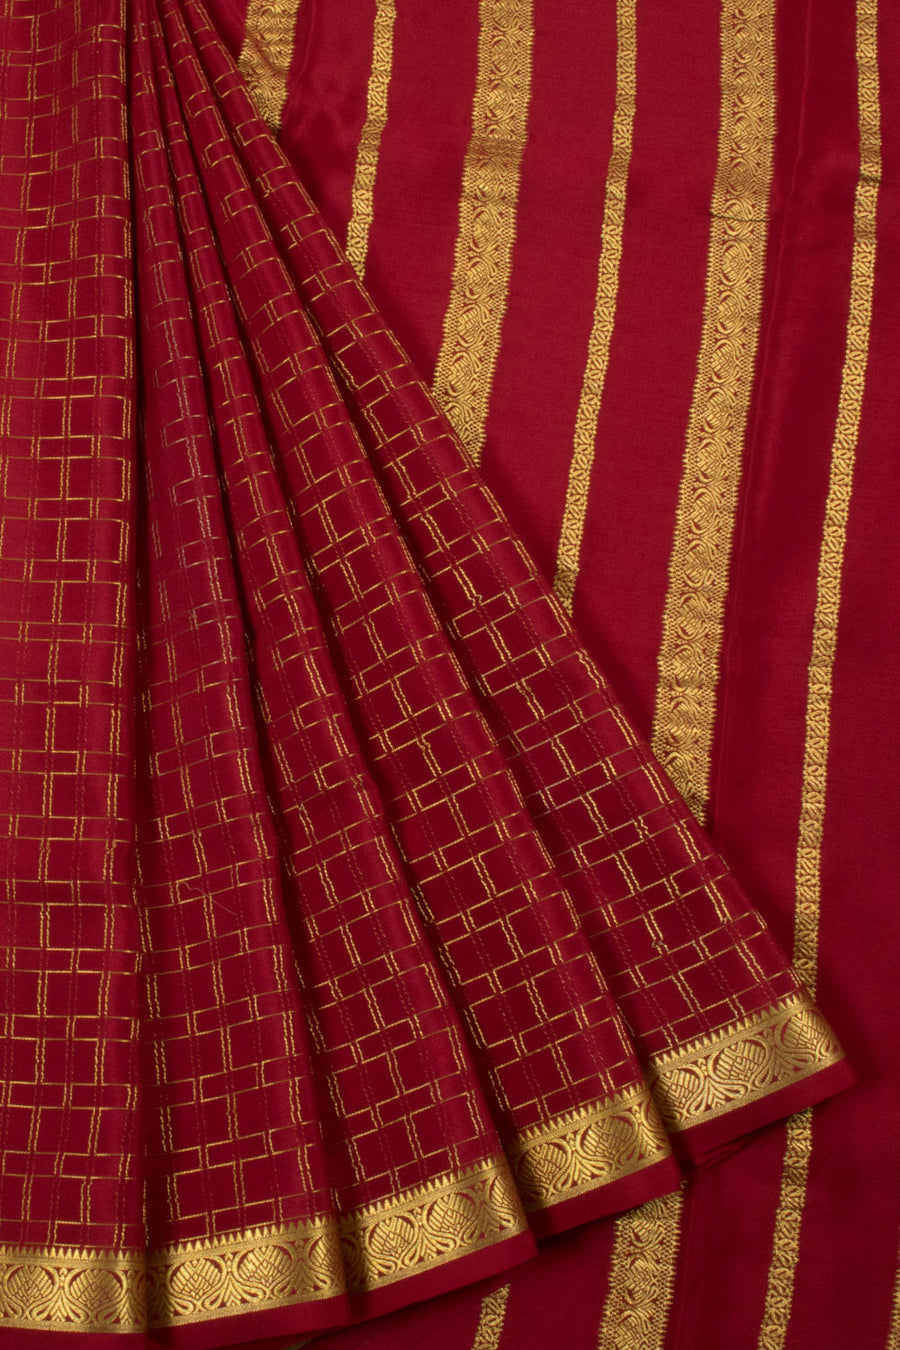 Wine Red Mysore Crepe Silk Saree with Zari Checks Design, Floral Border and Floral Pallu